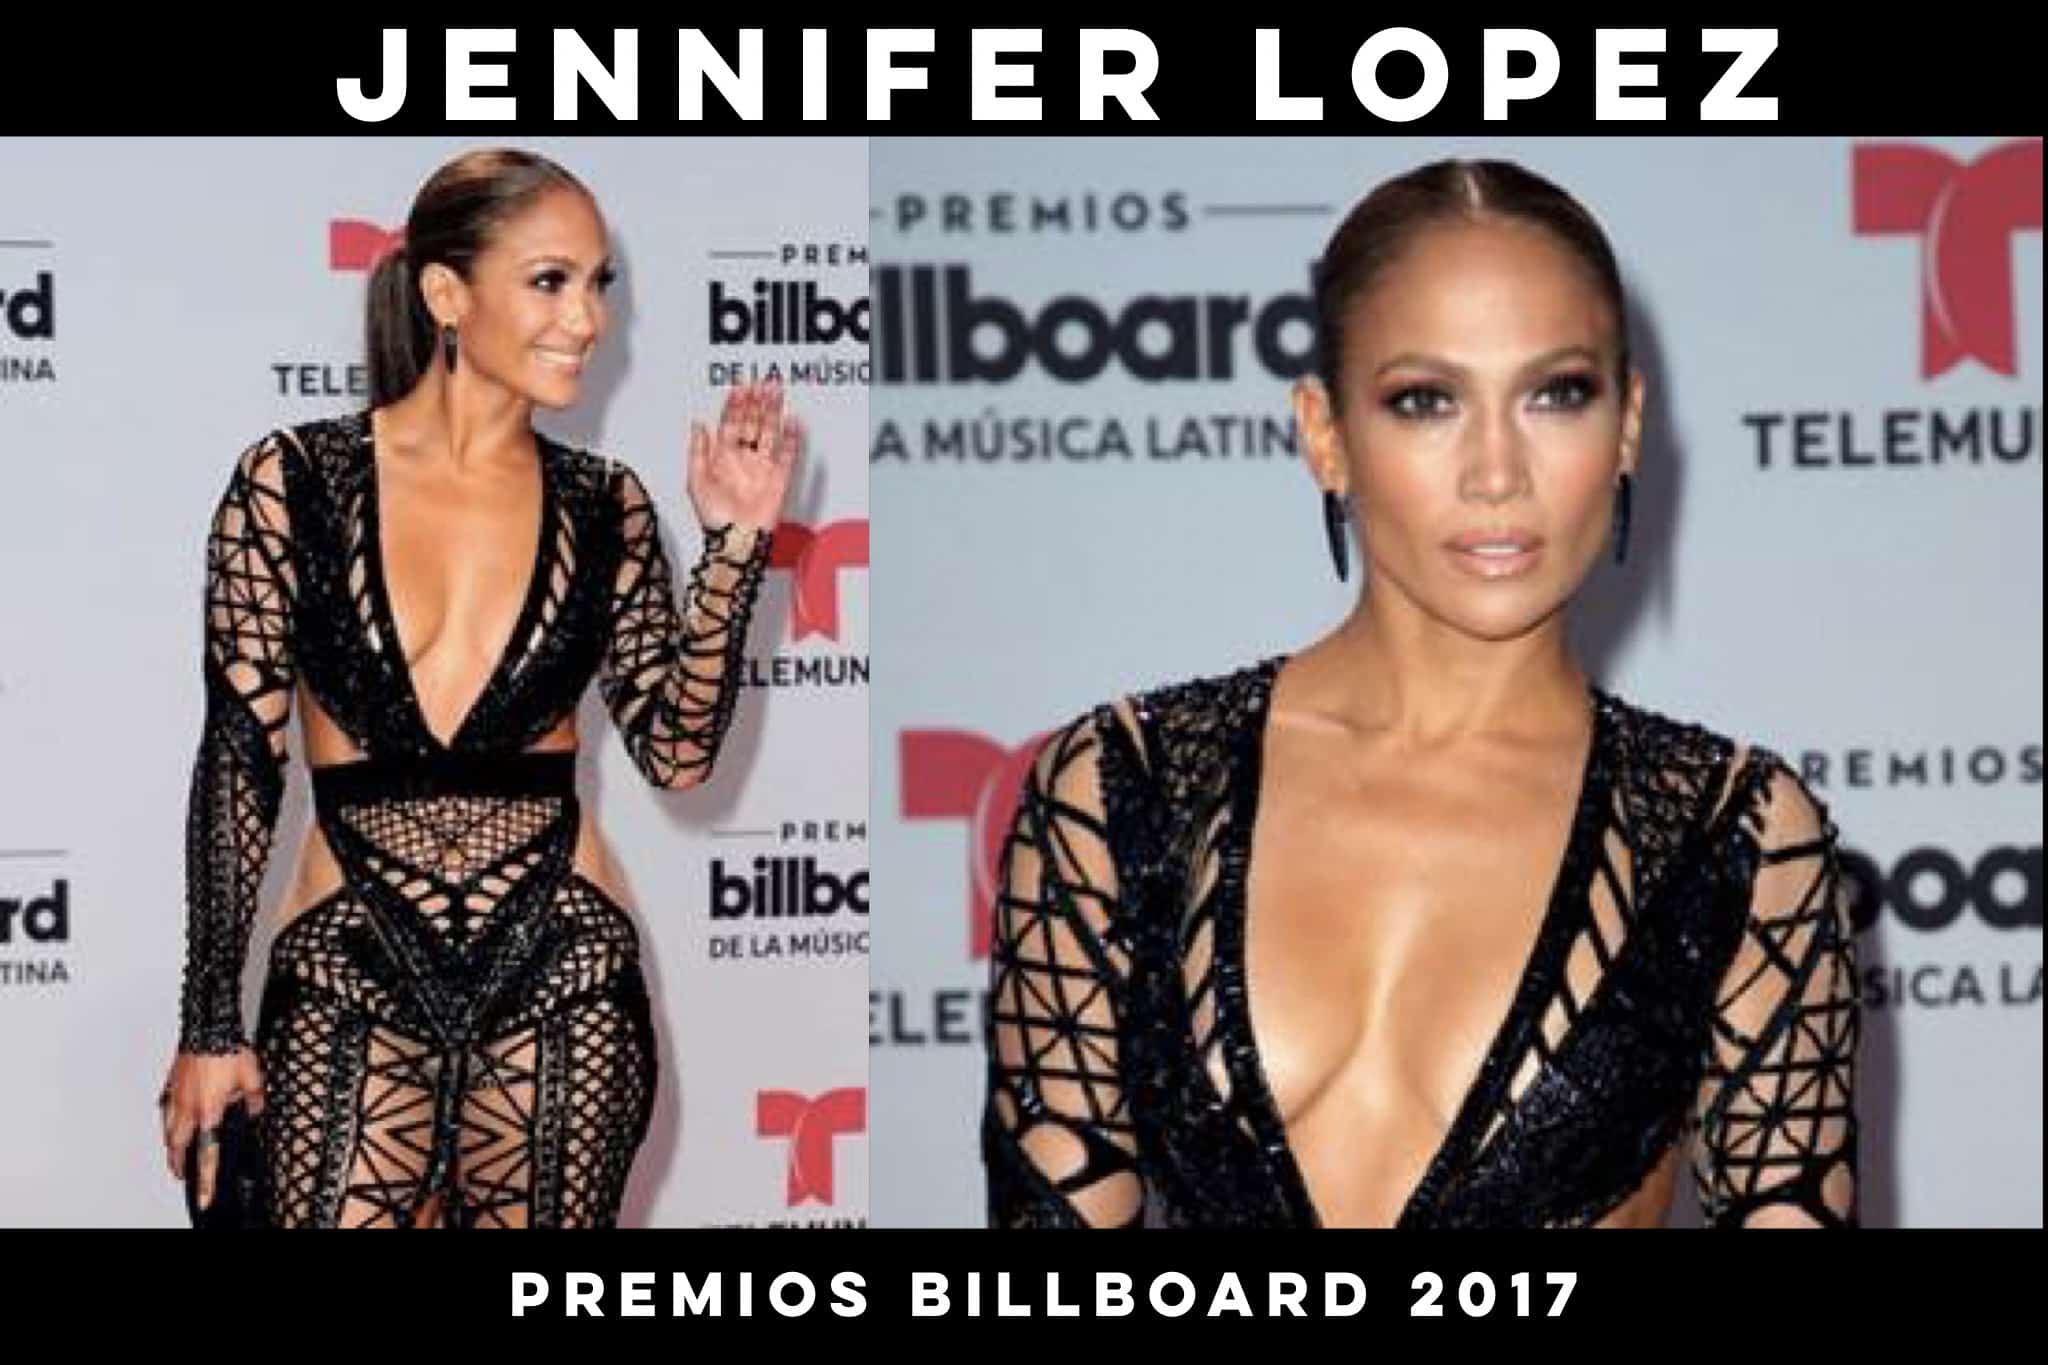 Todos los detalles del look de Jennifer López en Premios Billboard 2017